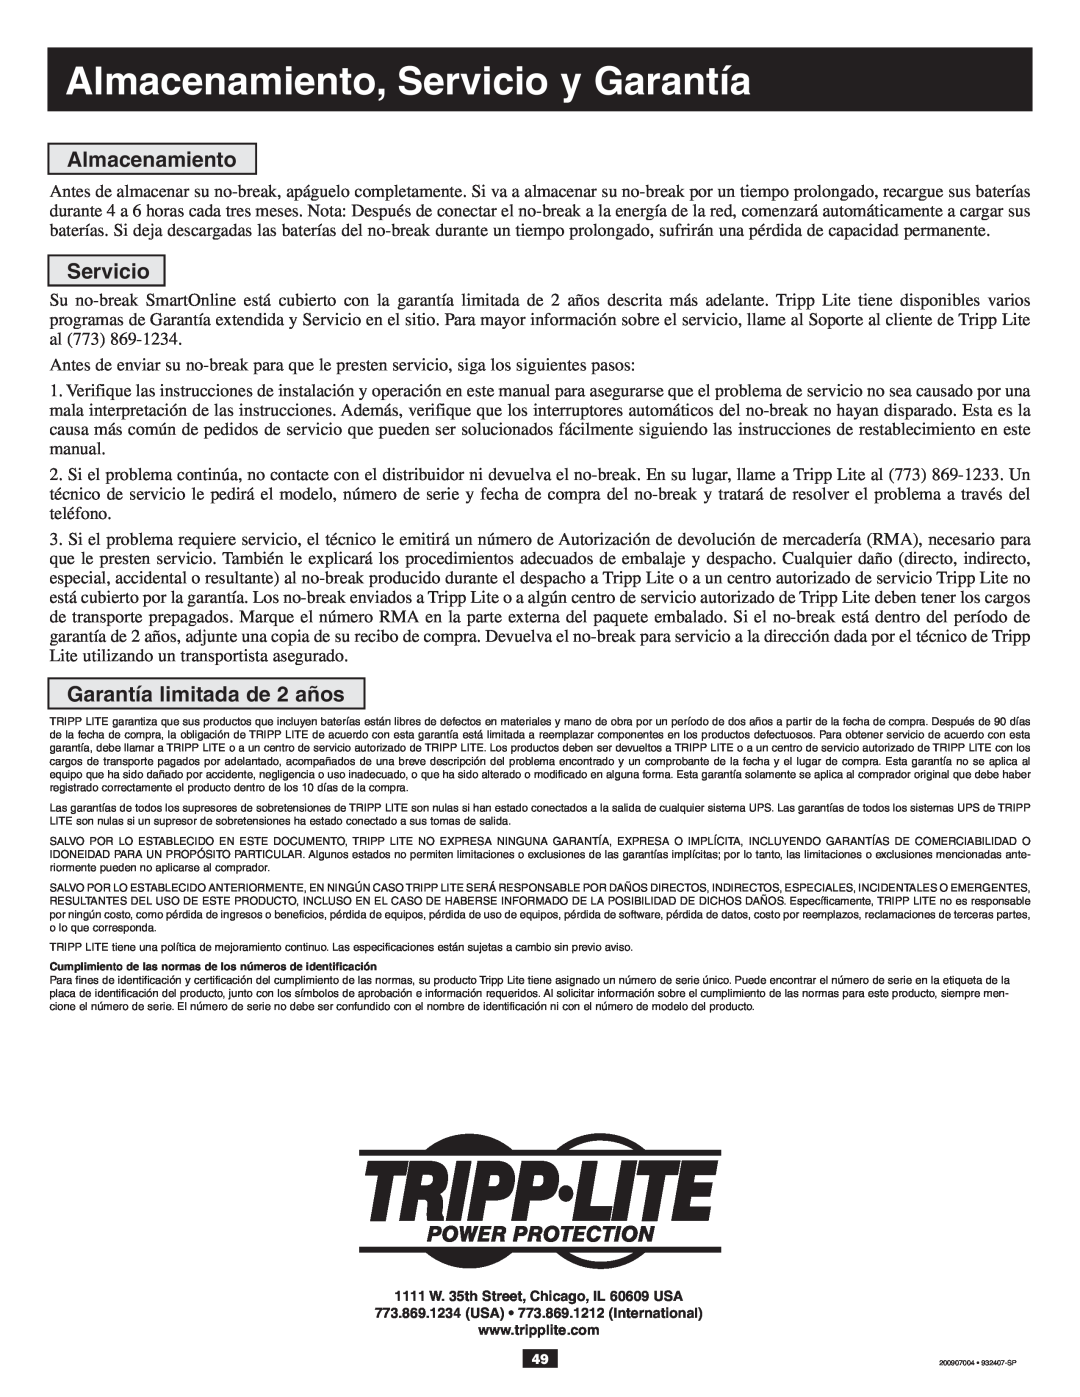 Tripp Lite 10KVA owner manual Almacenamiento, Servicio y Garantía, Garantía limitada de 2 años 